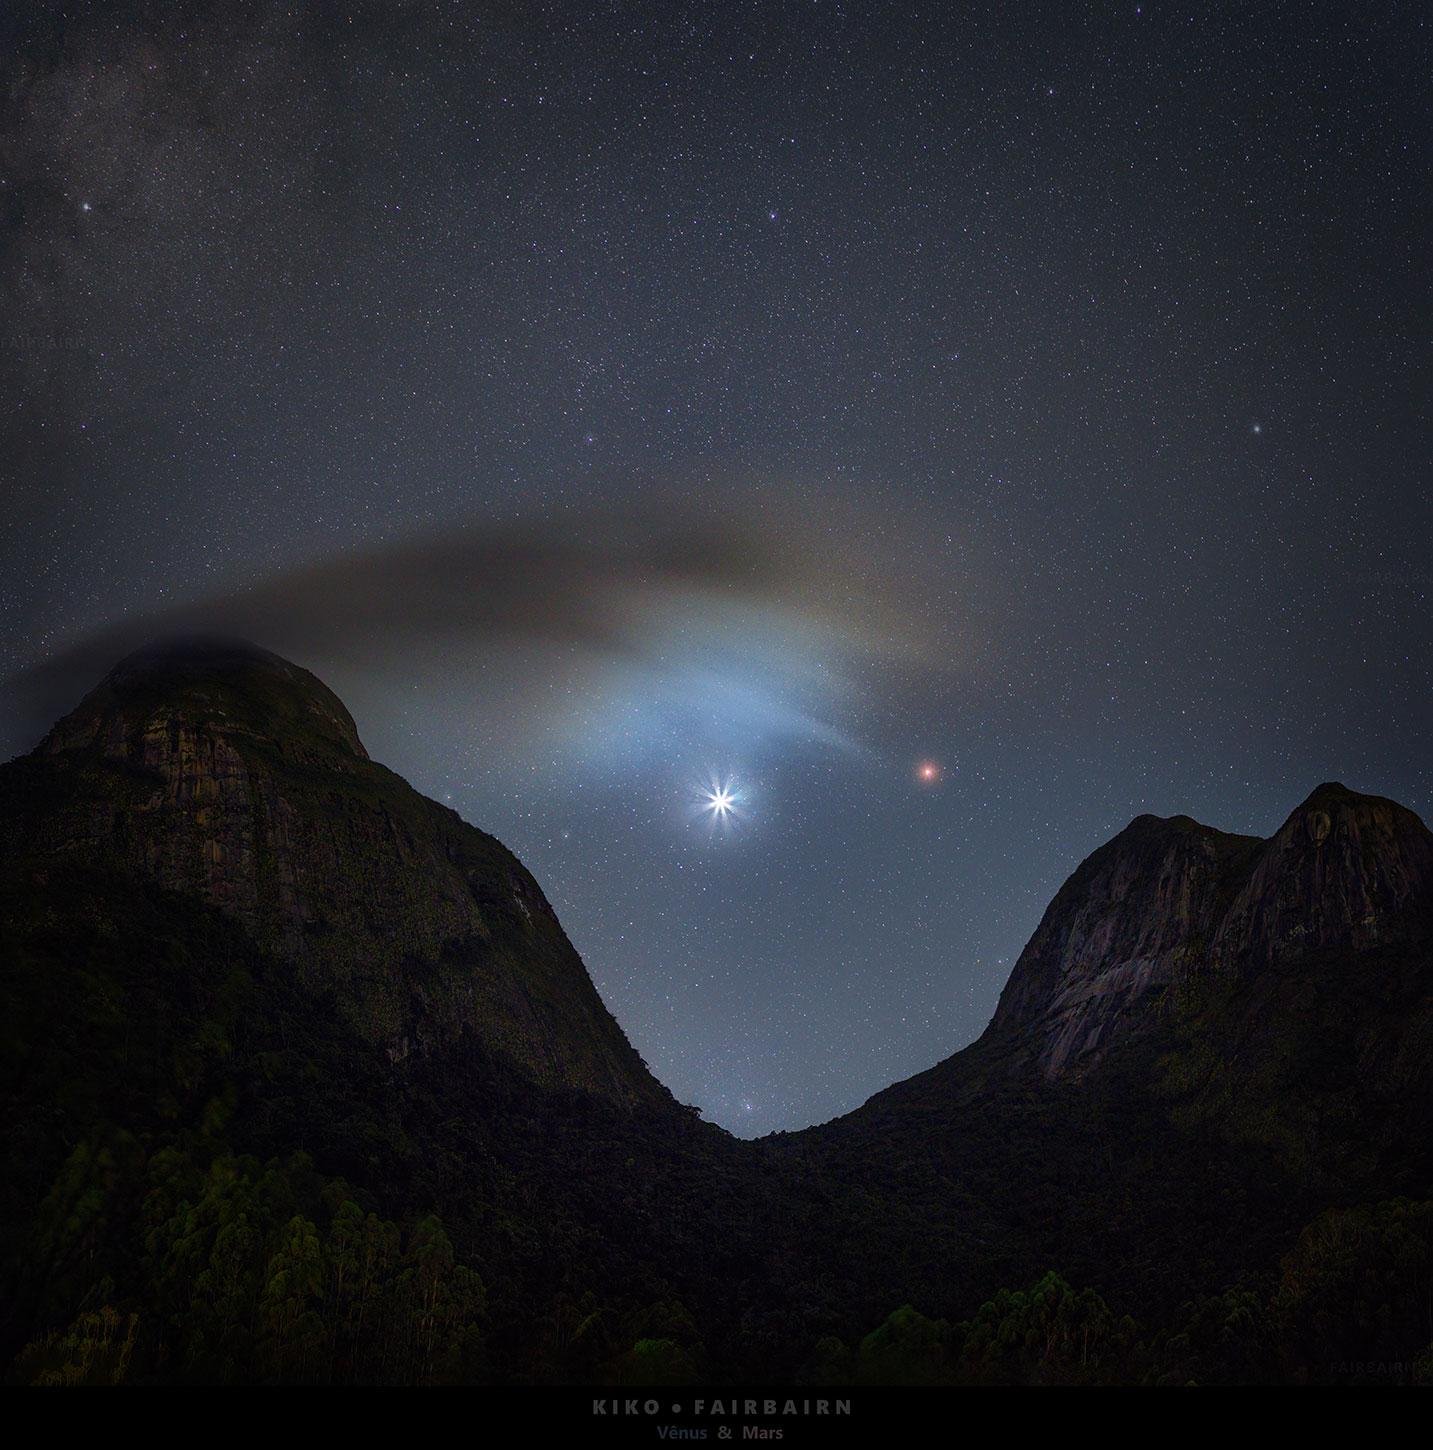 A foto tirada pelo fotógrafo brasileiro entrou para a seleção de imagens astronômicas do dia no site da NASA